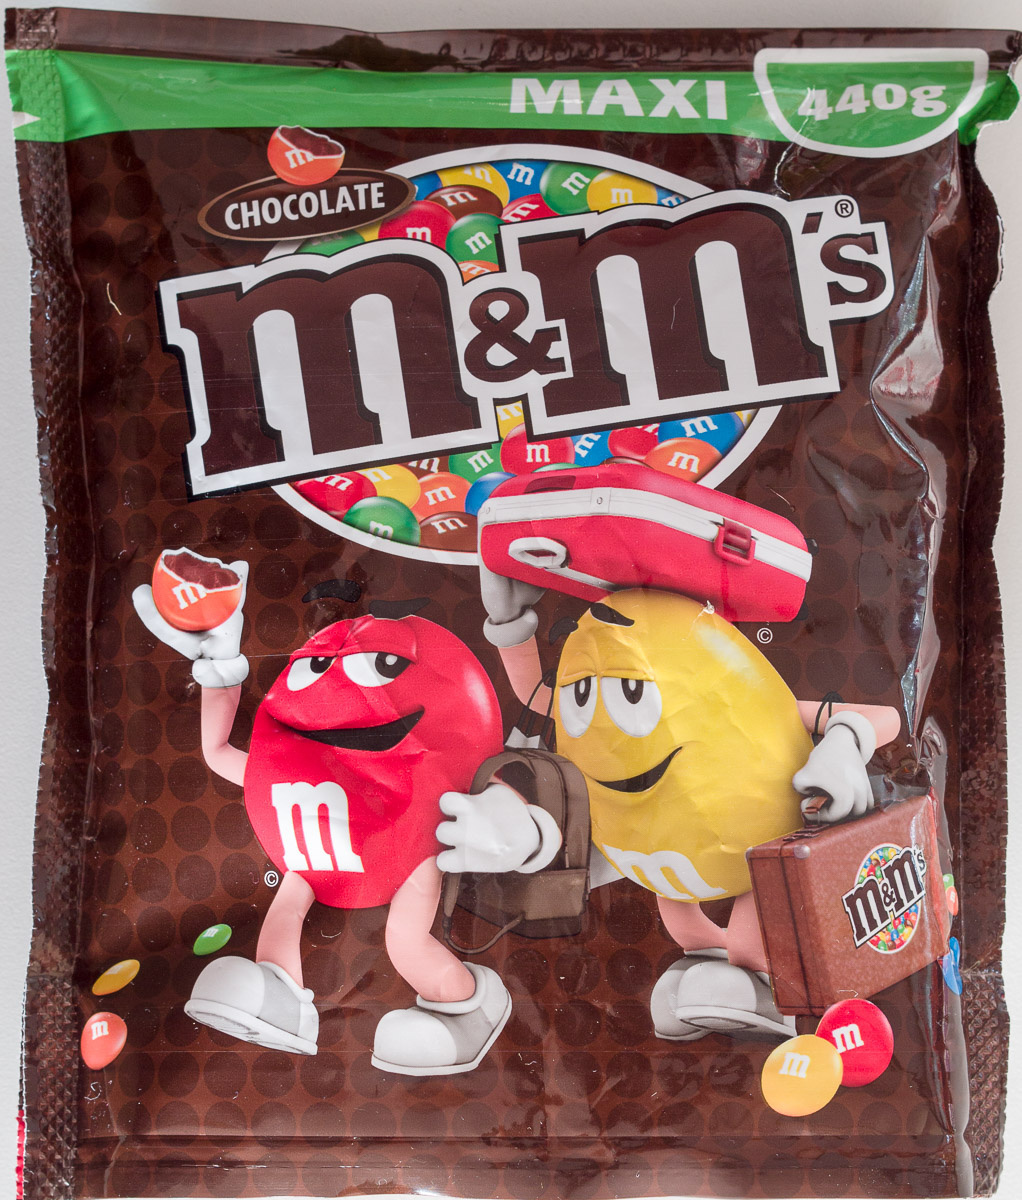 M&m's chocolate - Produit - en